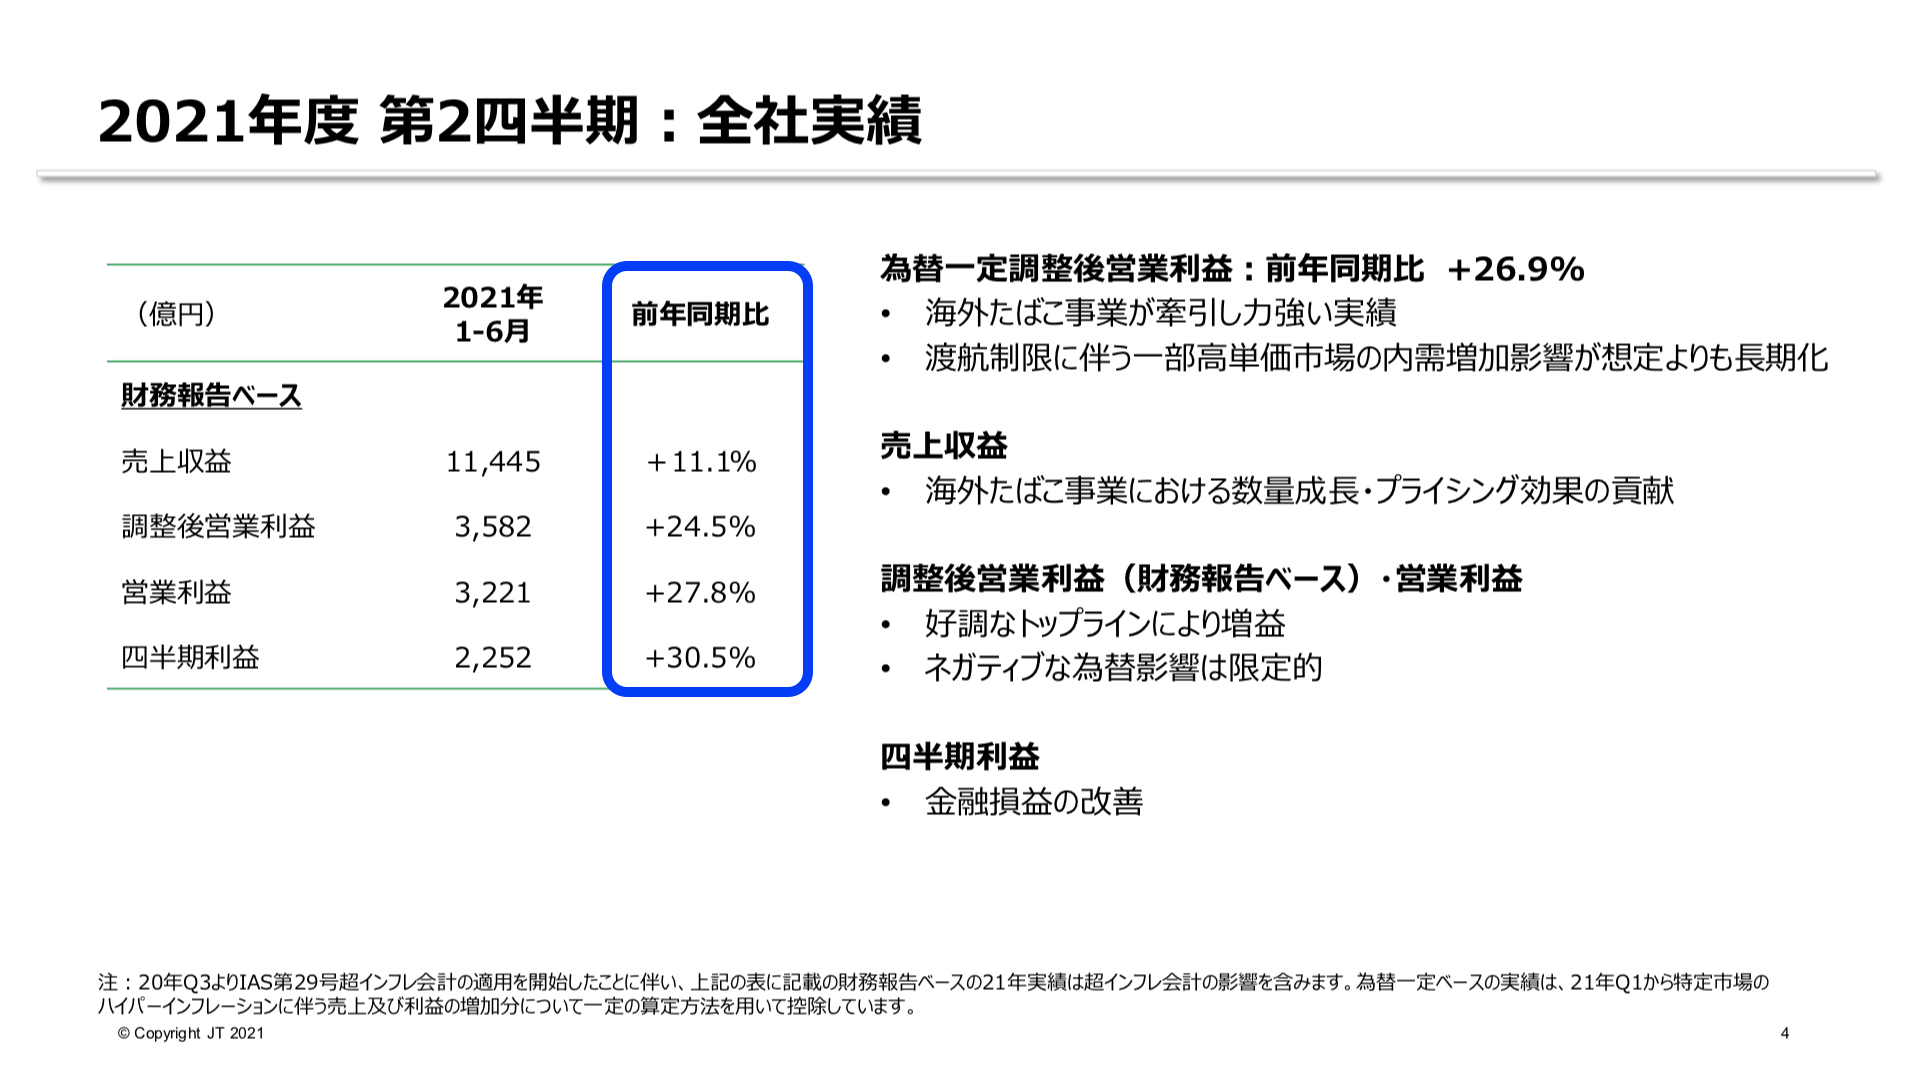 日本たばこ産業(JT) 2021年度2Q決算を徹底解説！　さとり世代の株日記 資産運用 株 投資 資産形成